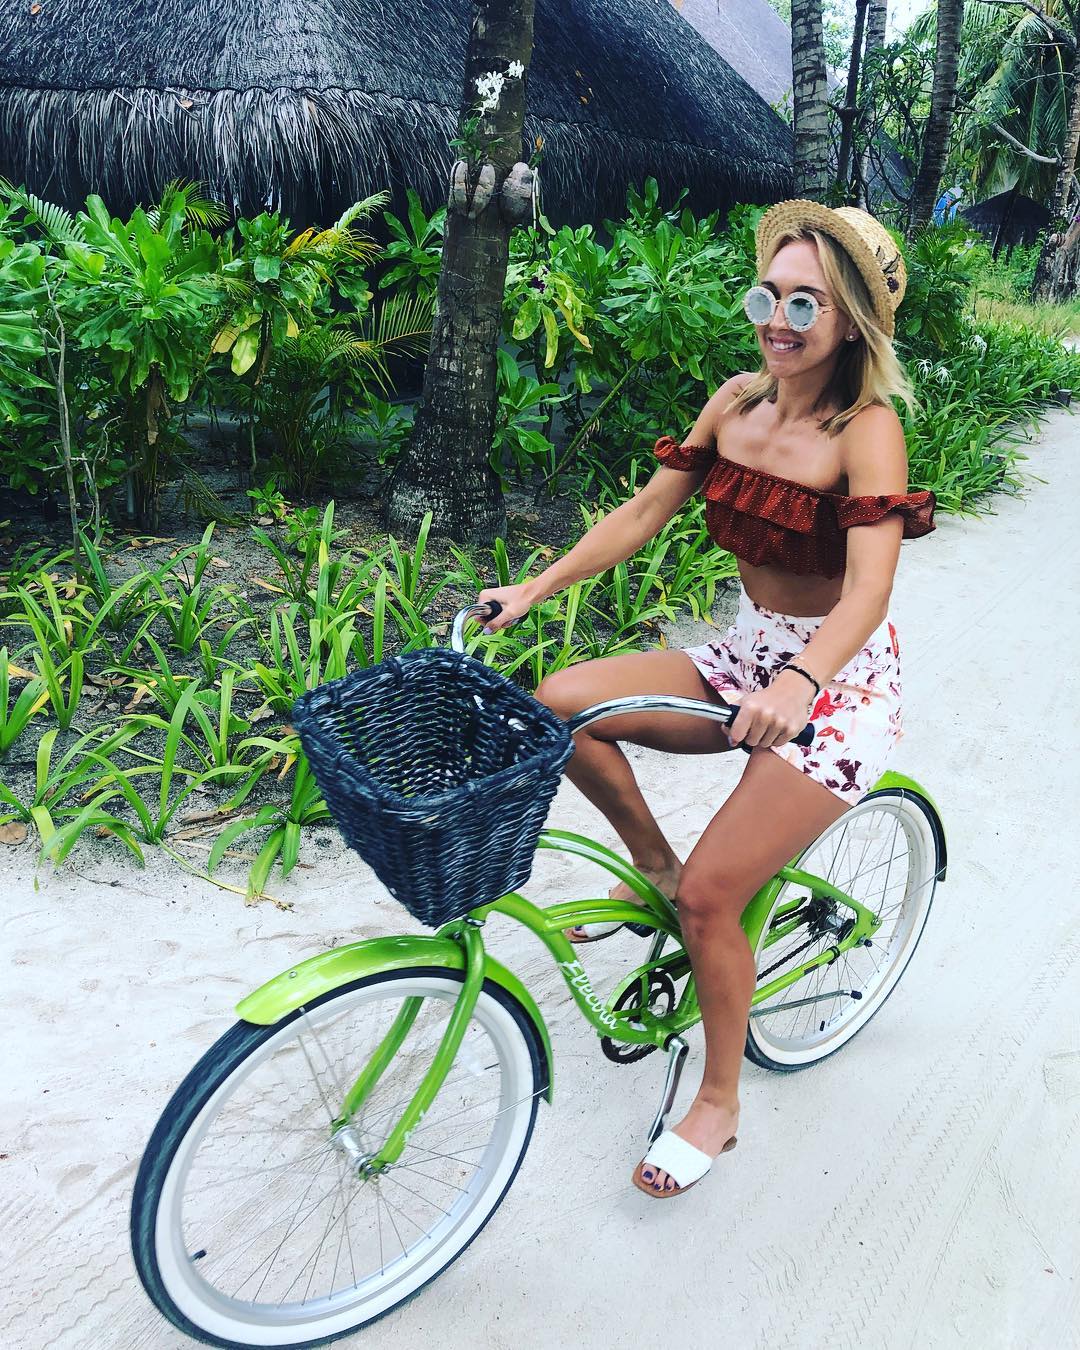 Елена Веснина добавила новую фотку в Instagram